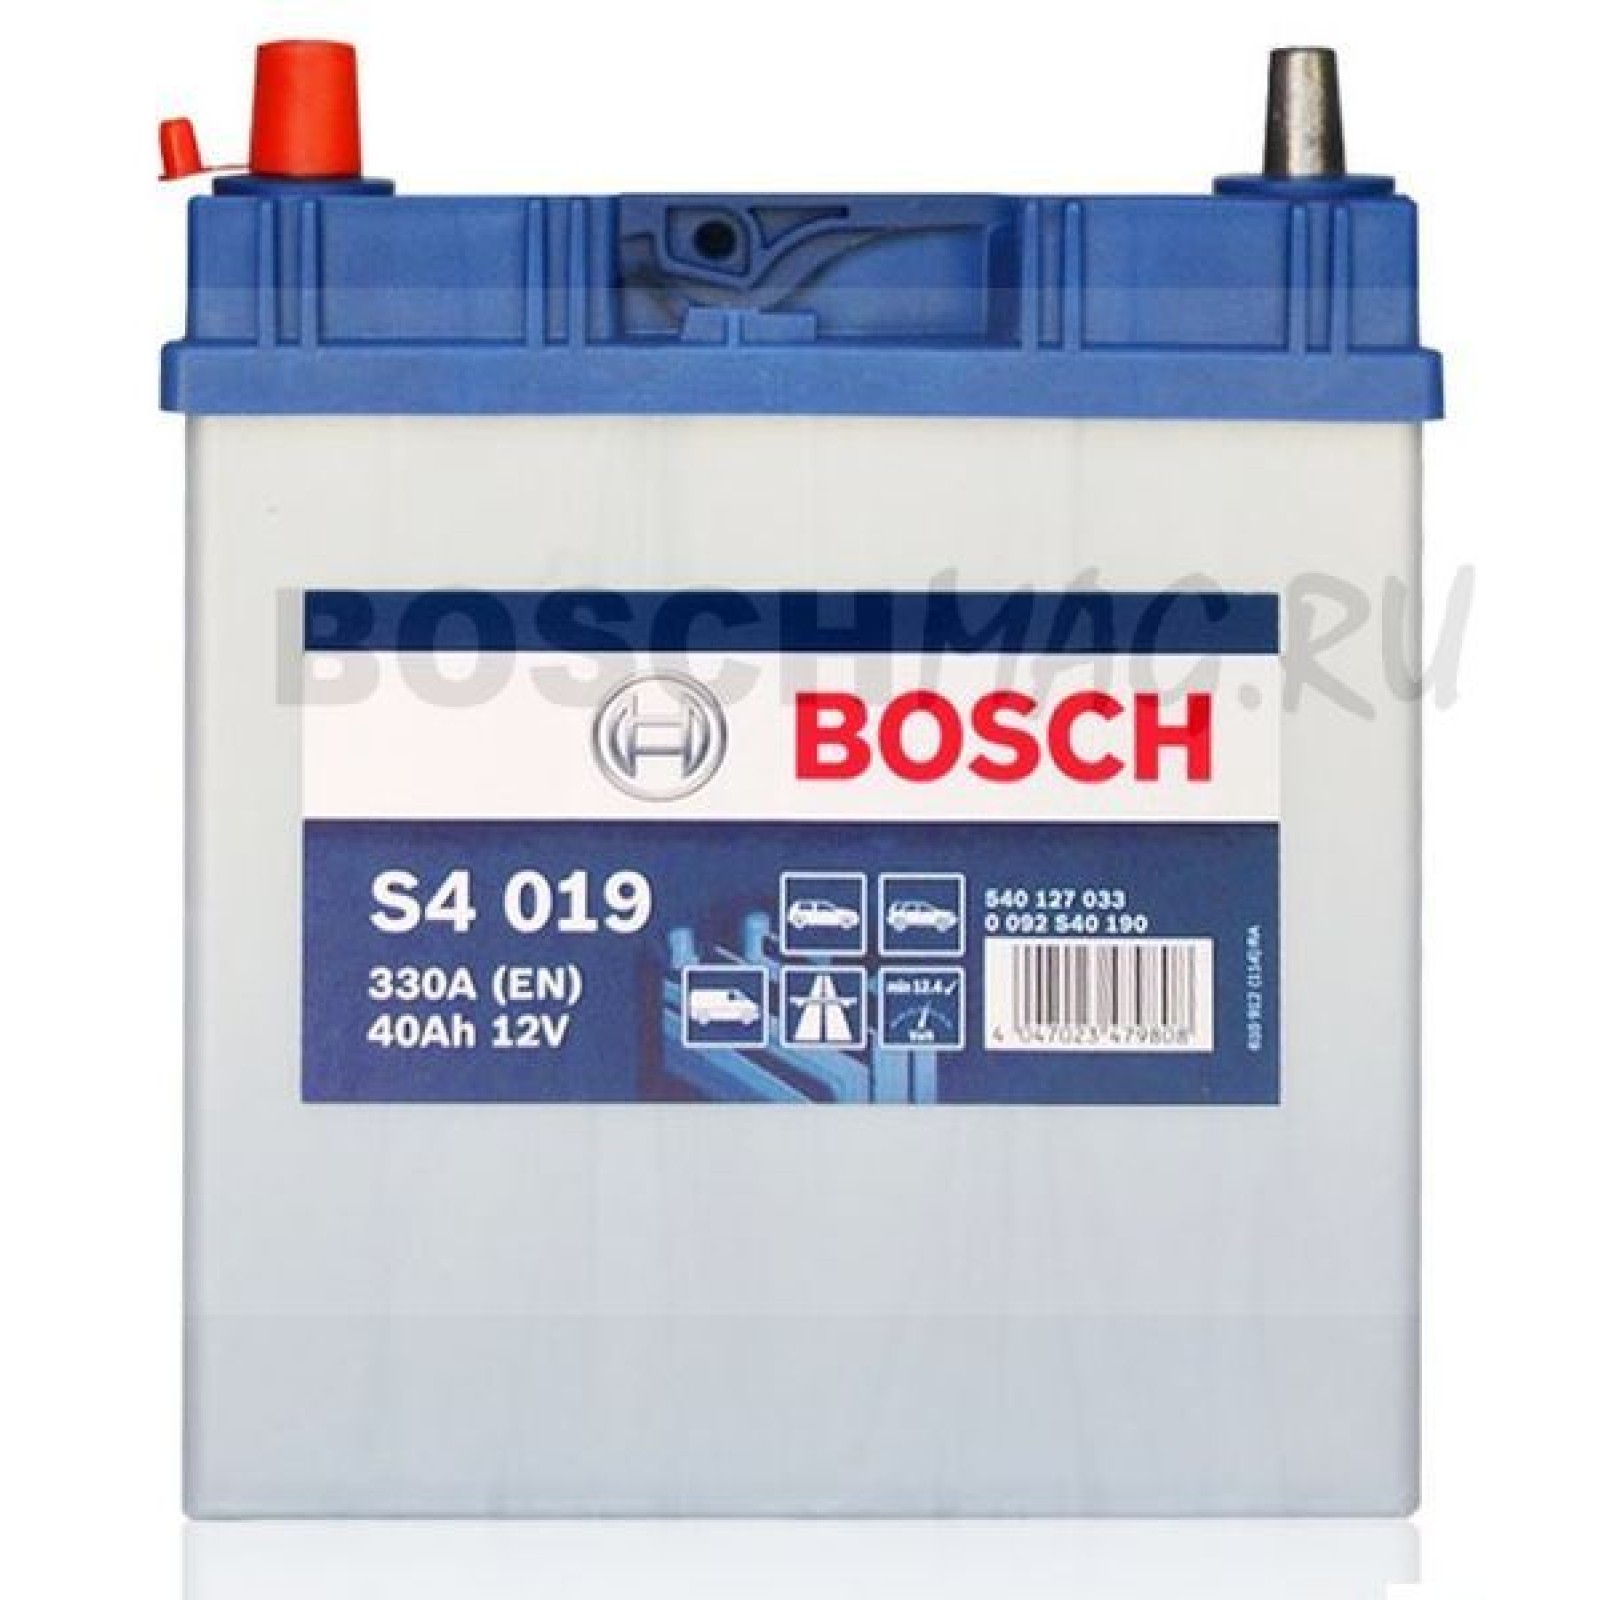 Аккумулятор автомобильный 40. 0 092 S40 180 Bosch. Аккумулятор Bosch s4 019 330a 40ah. Bosch s4 018 330a 40ah. Аккумулятор Bosch 0092s40190.